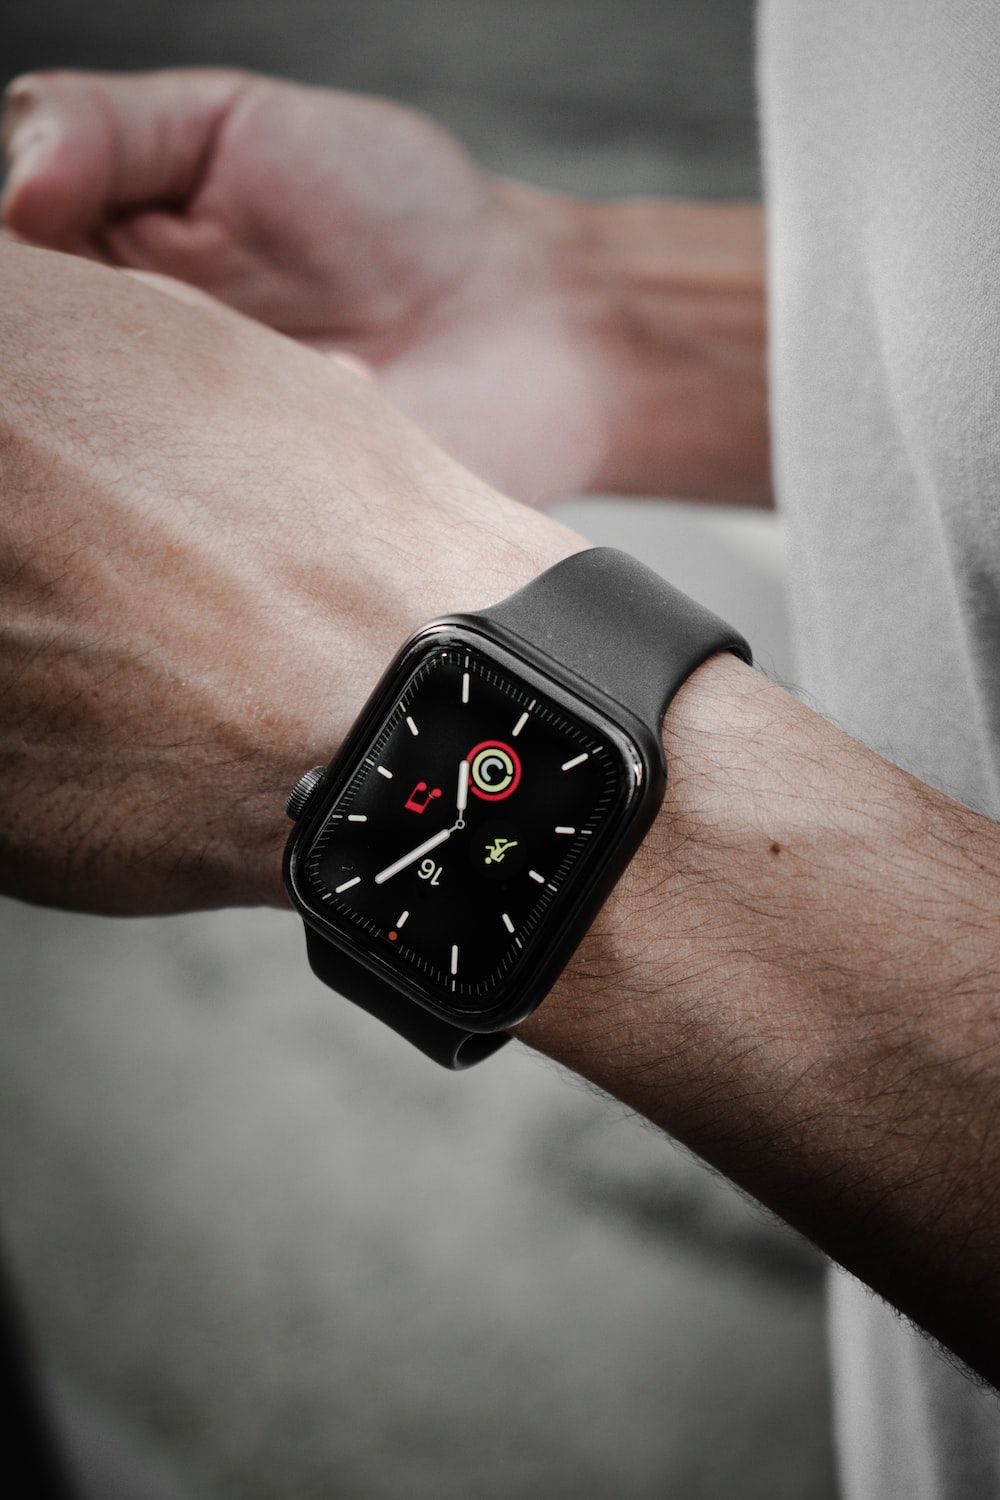  Apple Watch Hintergrundbild 1000x1500. Foto zum Thema schwarzes und silbernes Aluminiumgehäuse Apple Watch mit schwarzem Sportarmband